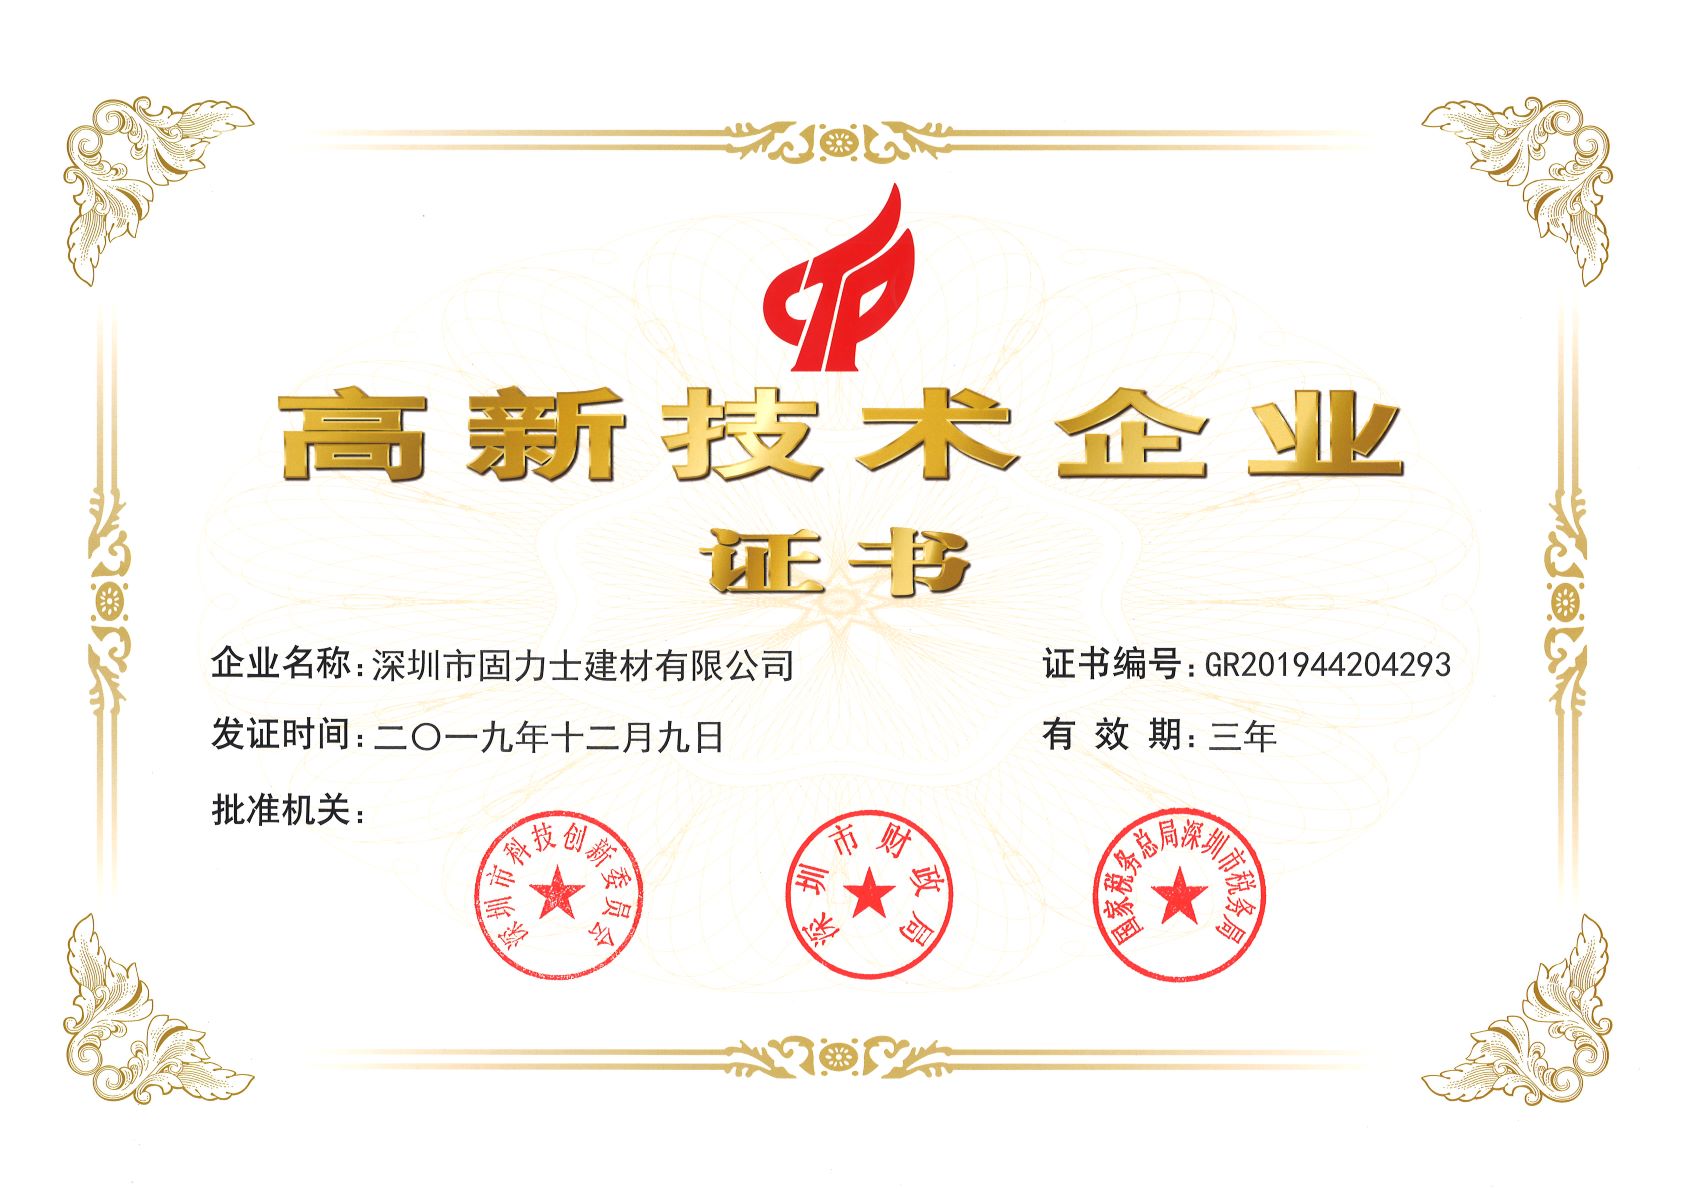 保亭热烈祝贺深圳市固力士建材有限公司通过高新技术企业认证